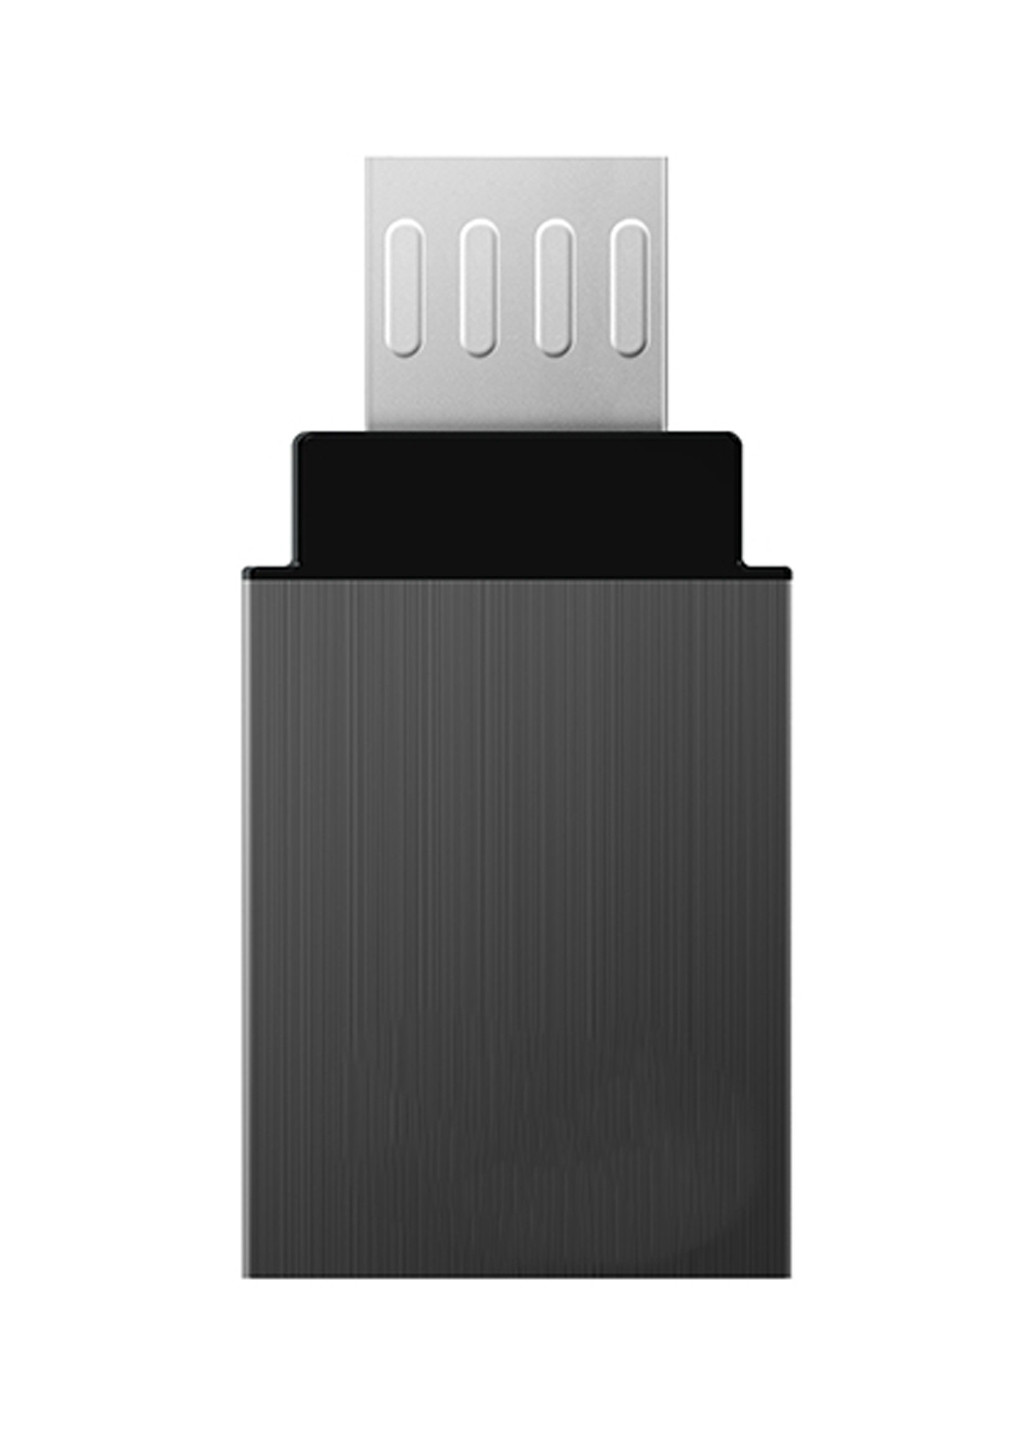 Флеш пам'ять USB M151 OTG 16 GB USB / micro-USB Gray (TM15116GC01) Team флеш память usb team m151 otg 16 gb usb/micro-usb gray (tm15116gc01) (134201755)